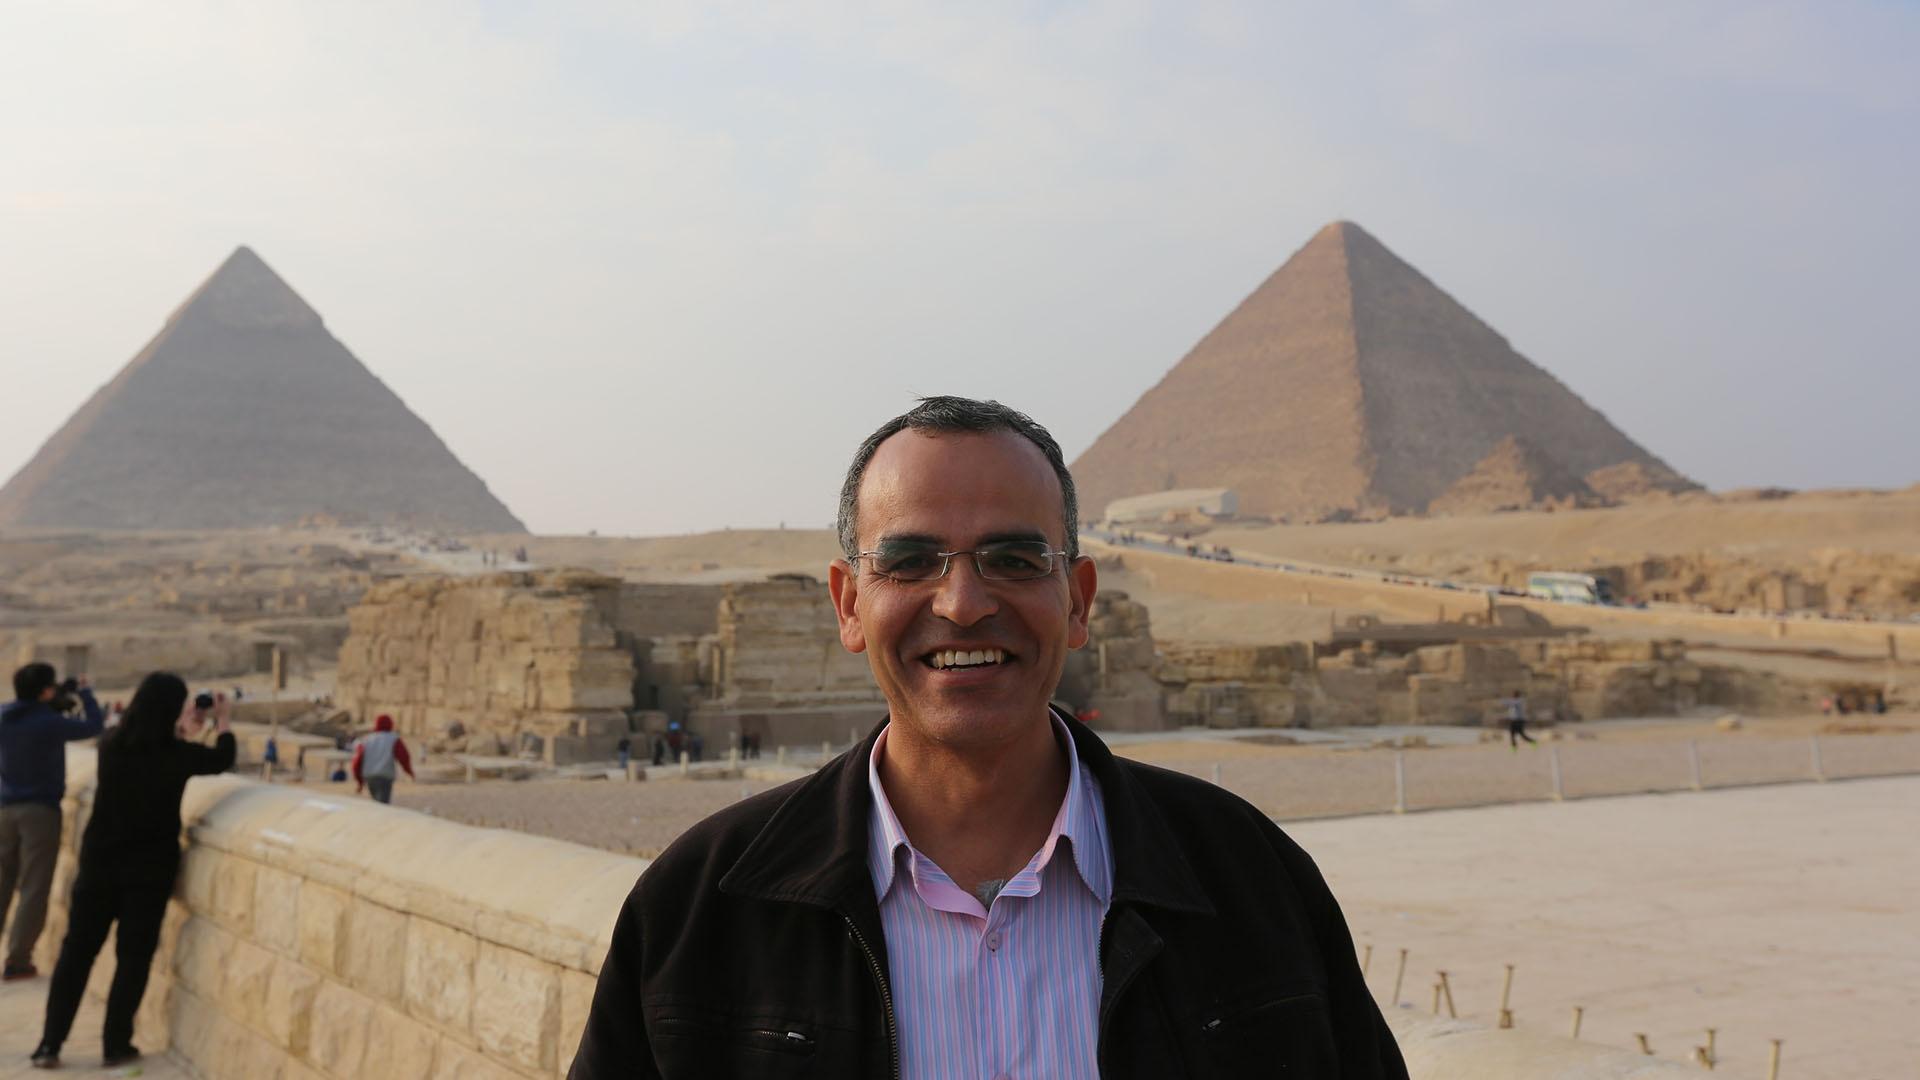 Ibrahim Morgan at the Great Pyramid.